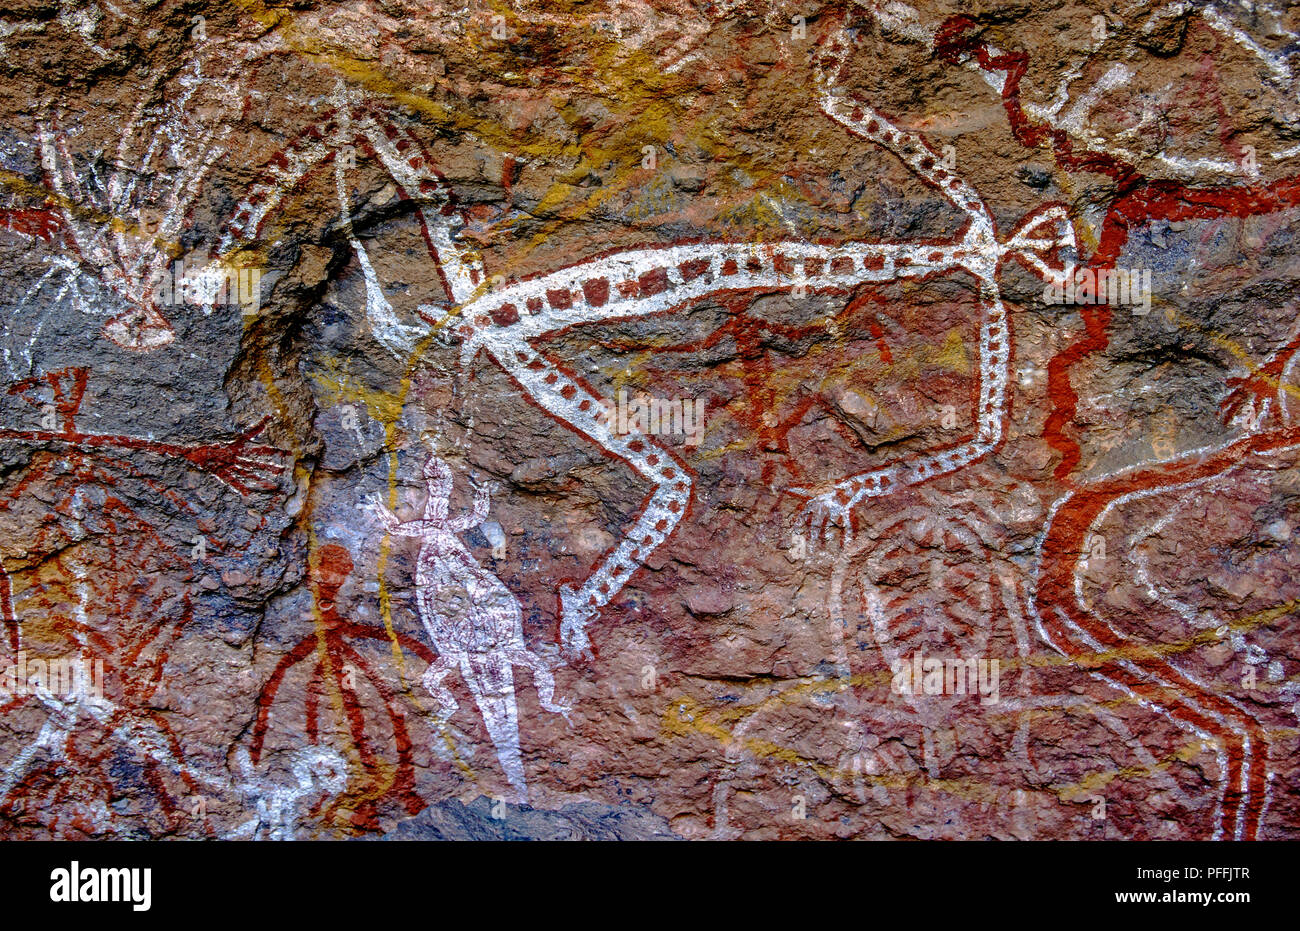 Australia Territorio del Nord - Nourlange Rock - Kakadu National Park - uno dei graffiti aborigeni Foto Stock